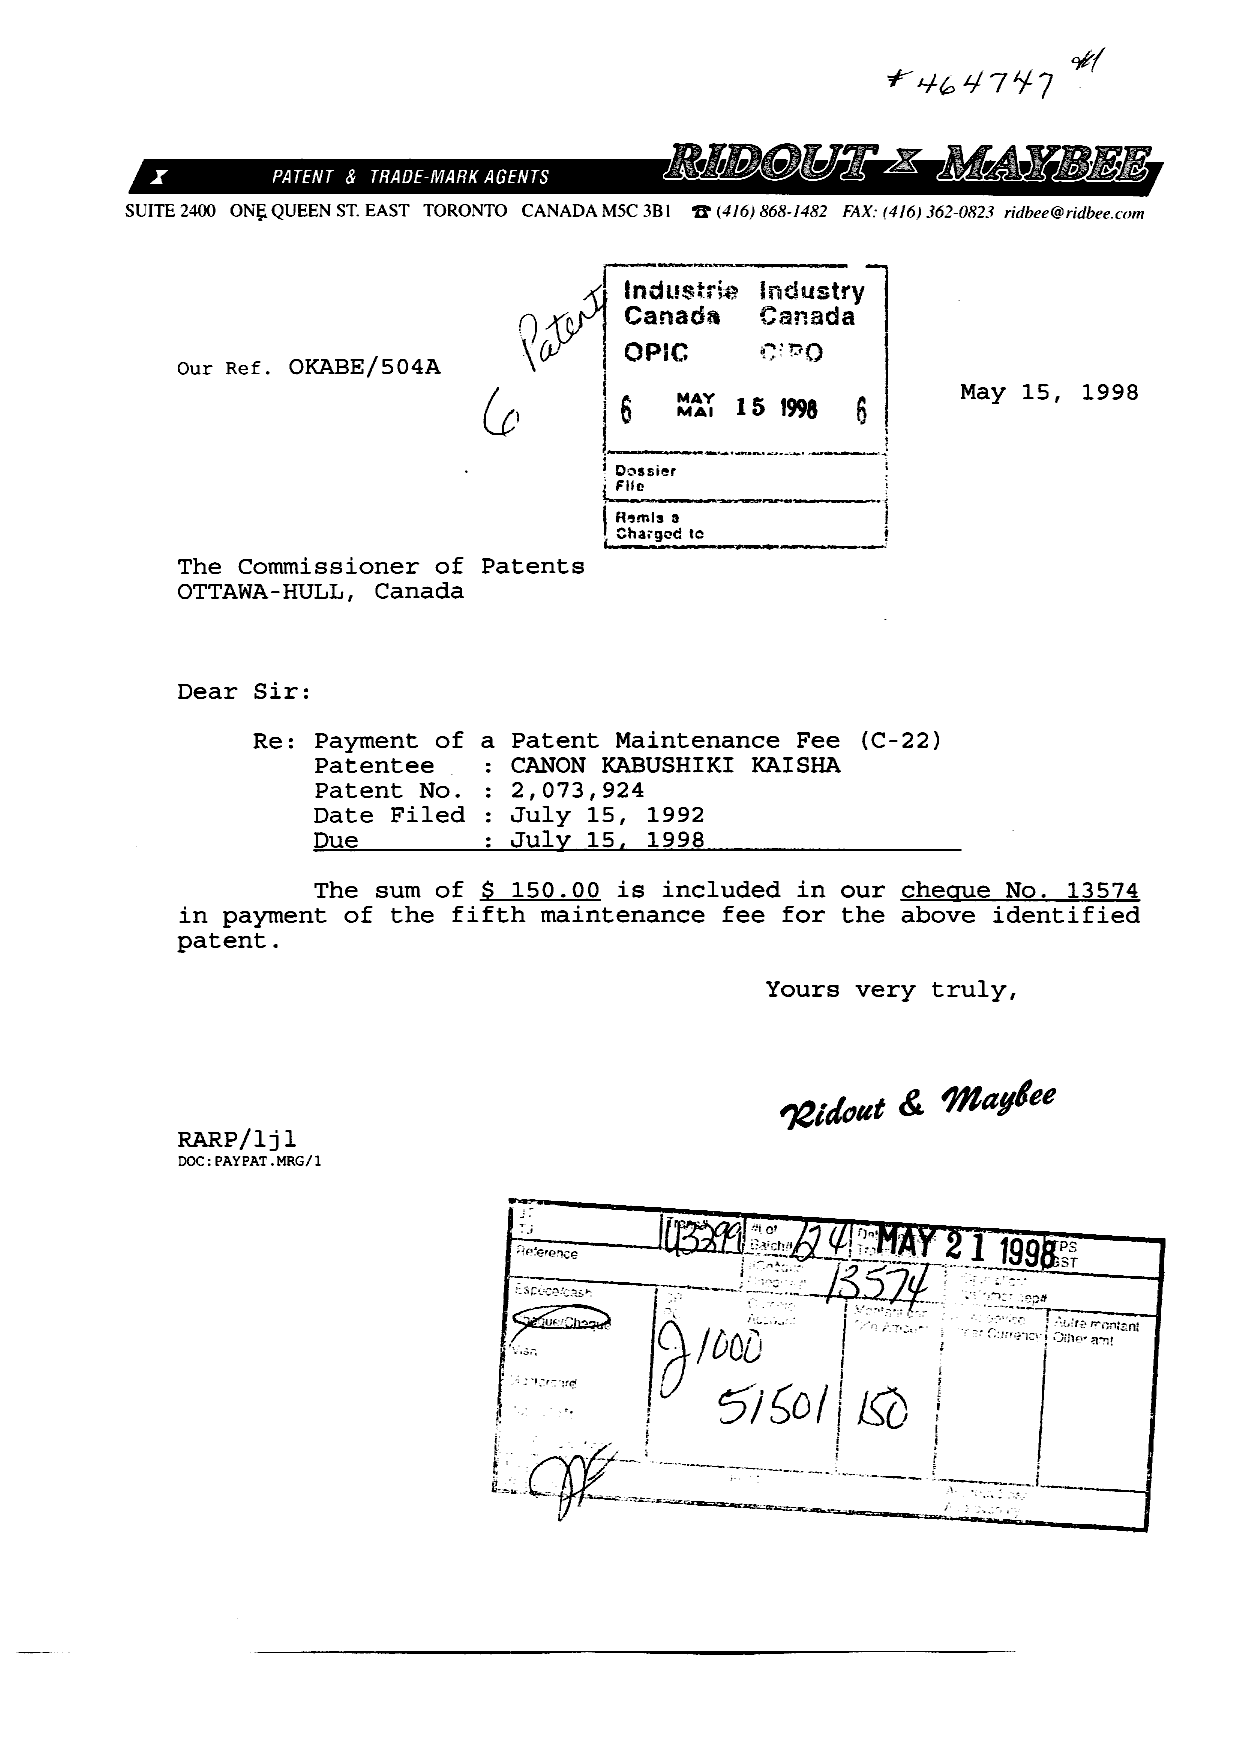 Document de brevet canadien 2073924. Taxes 19980515. Image 1 de 1